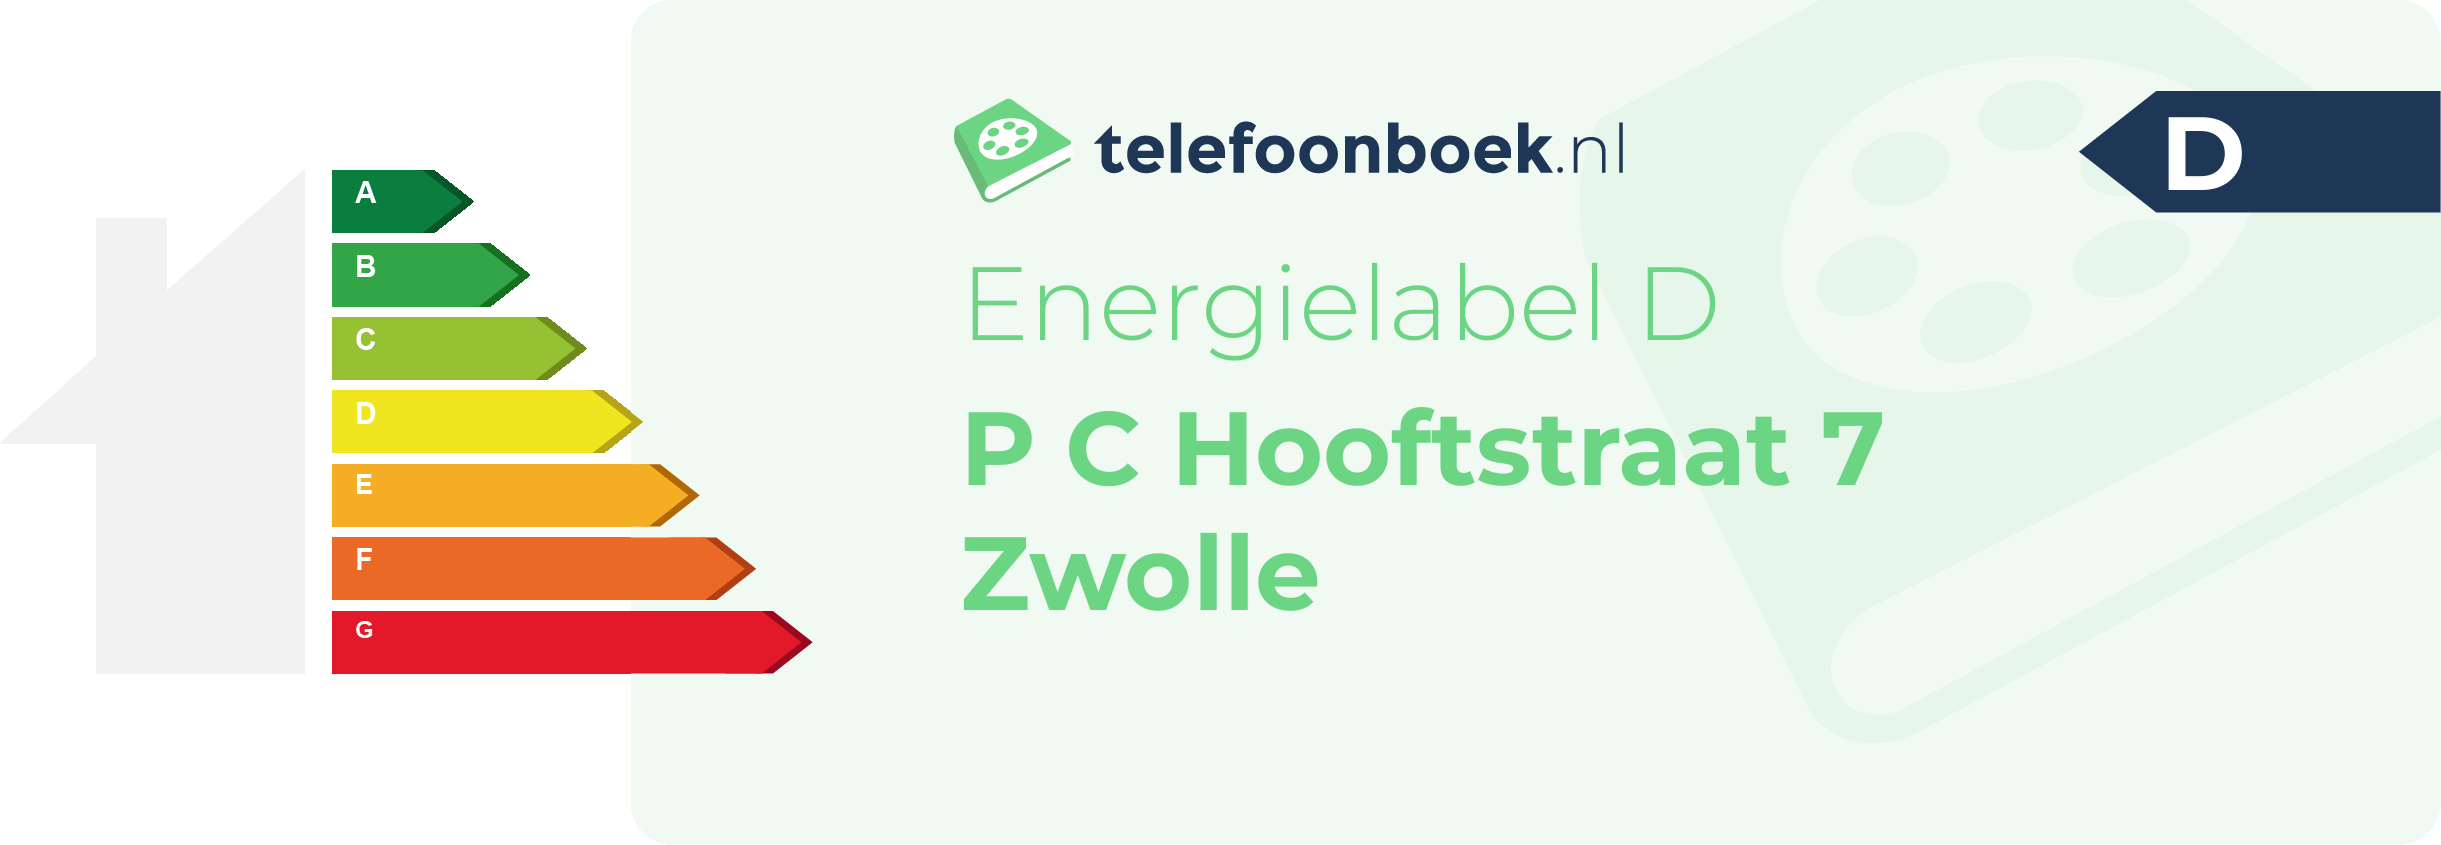 Energielabel P C Hooftstraat 7 Zwolle